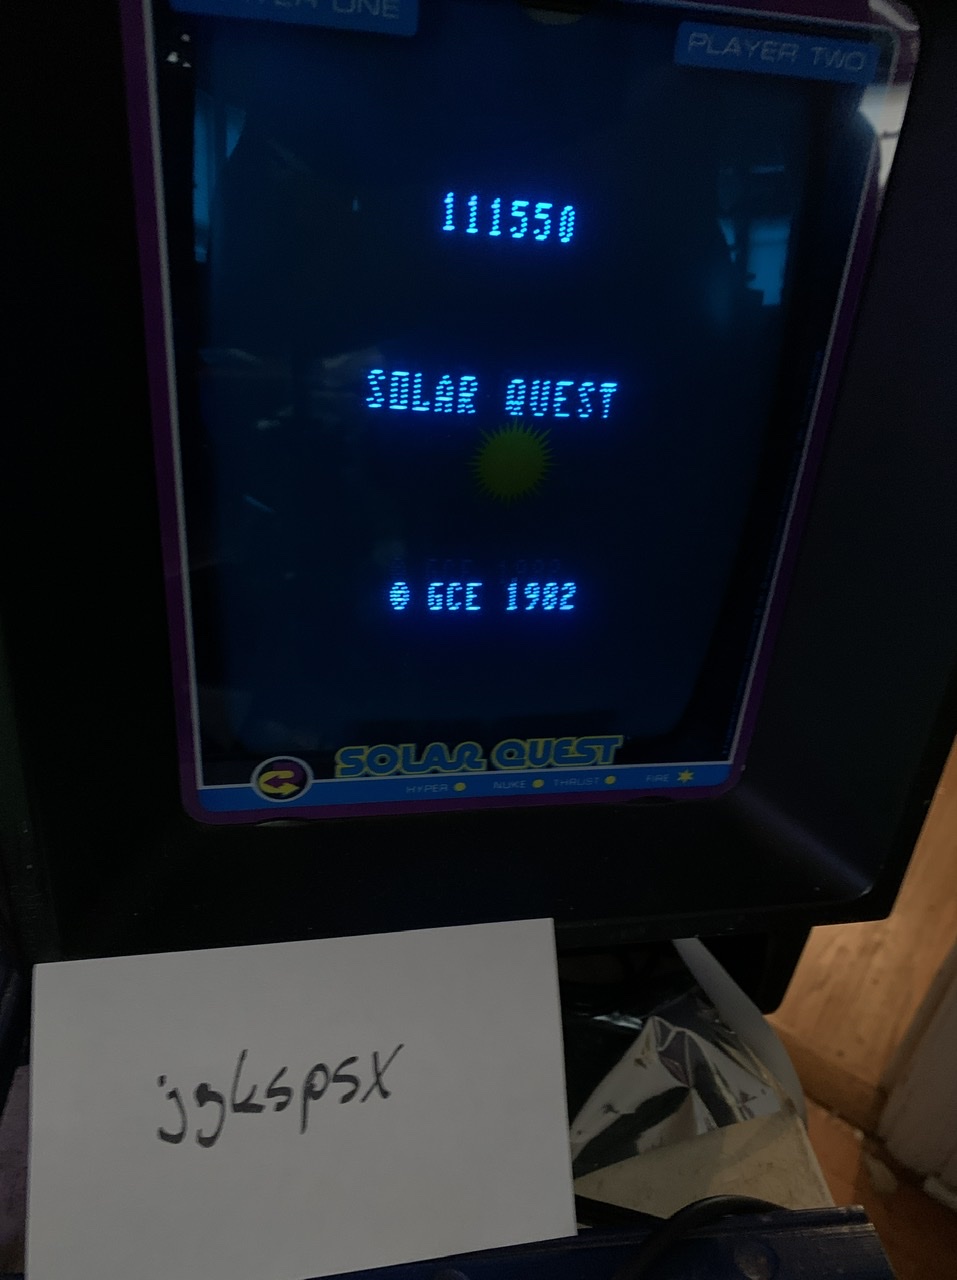 Solar Quest 111,550 points